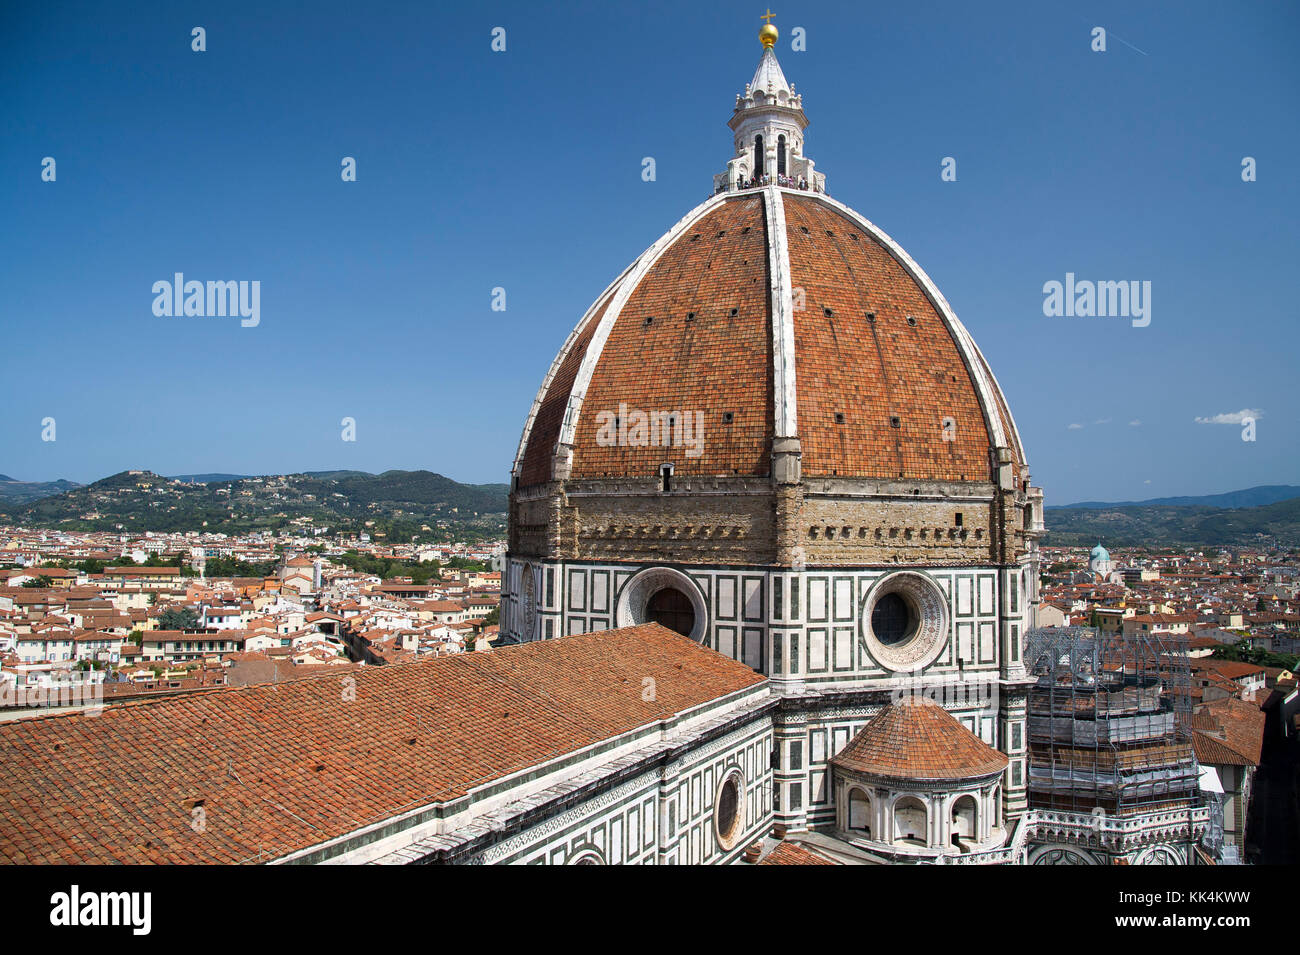 Renaissance Cupola del Brunelleschi (Brunelleschis Dom) der italienischen gotischen Kathedrale Santa Maria del Fiore (Florenz Kathedrale der Heiligen Maria von t Stockfoto